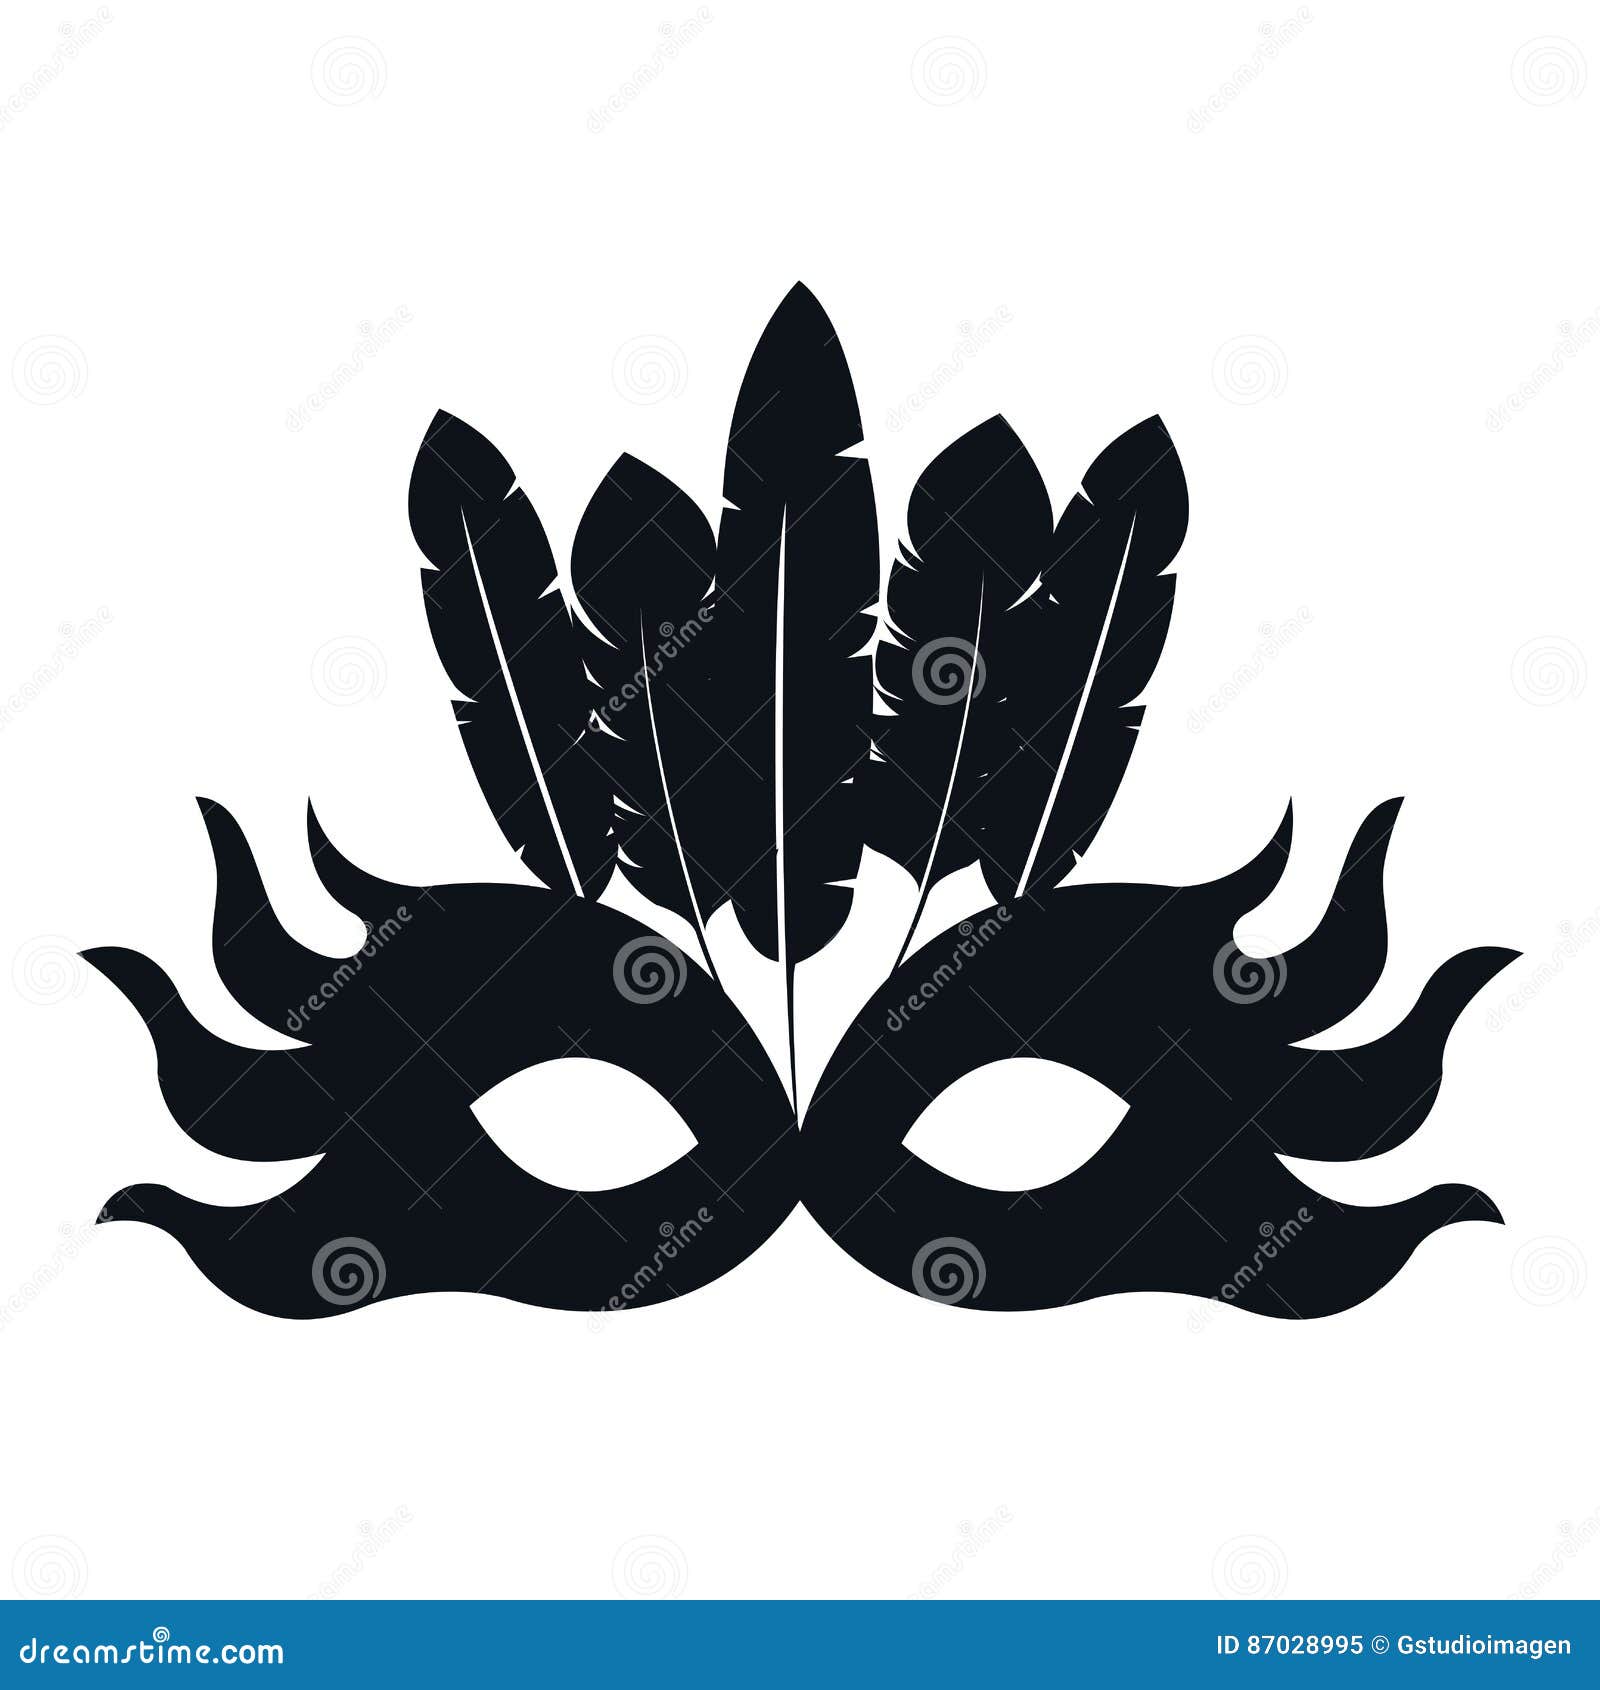 Czarnego sylwetki maski piórka karnawałowego festiwalu cyrkowy uczciwy świętowanie. Czarnego sylwetki maski piórka karnawałowego festiwalu świętowania wektoru cyrkowa uczciwa ilustracja